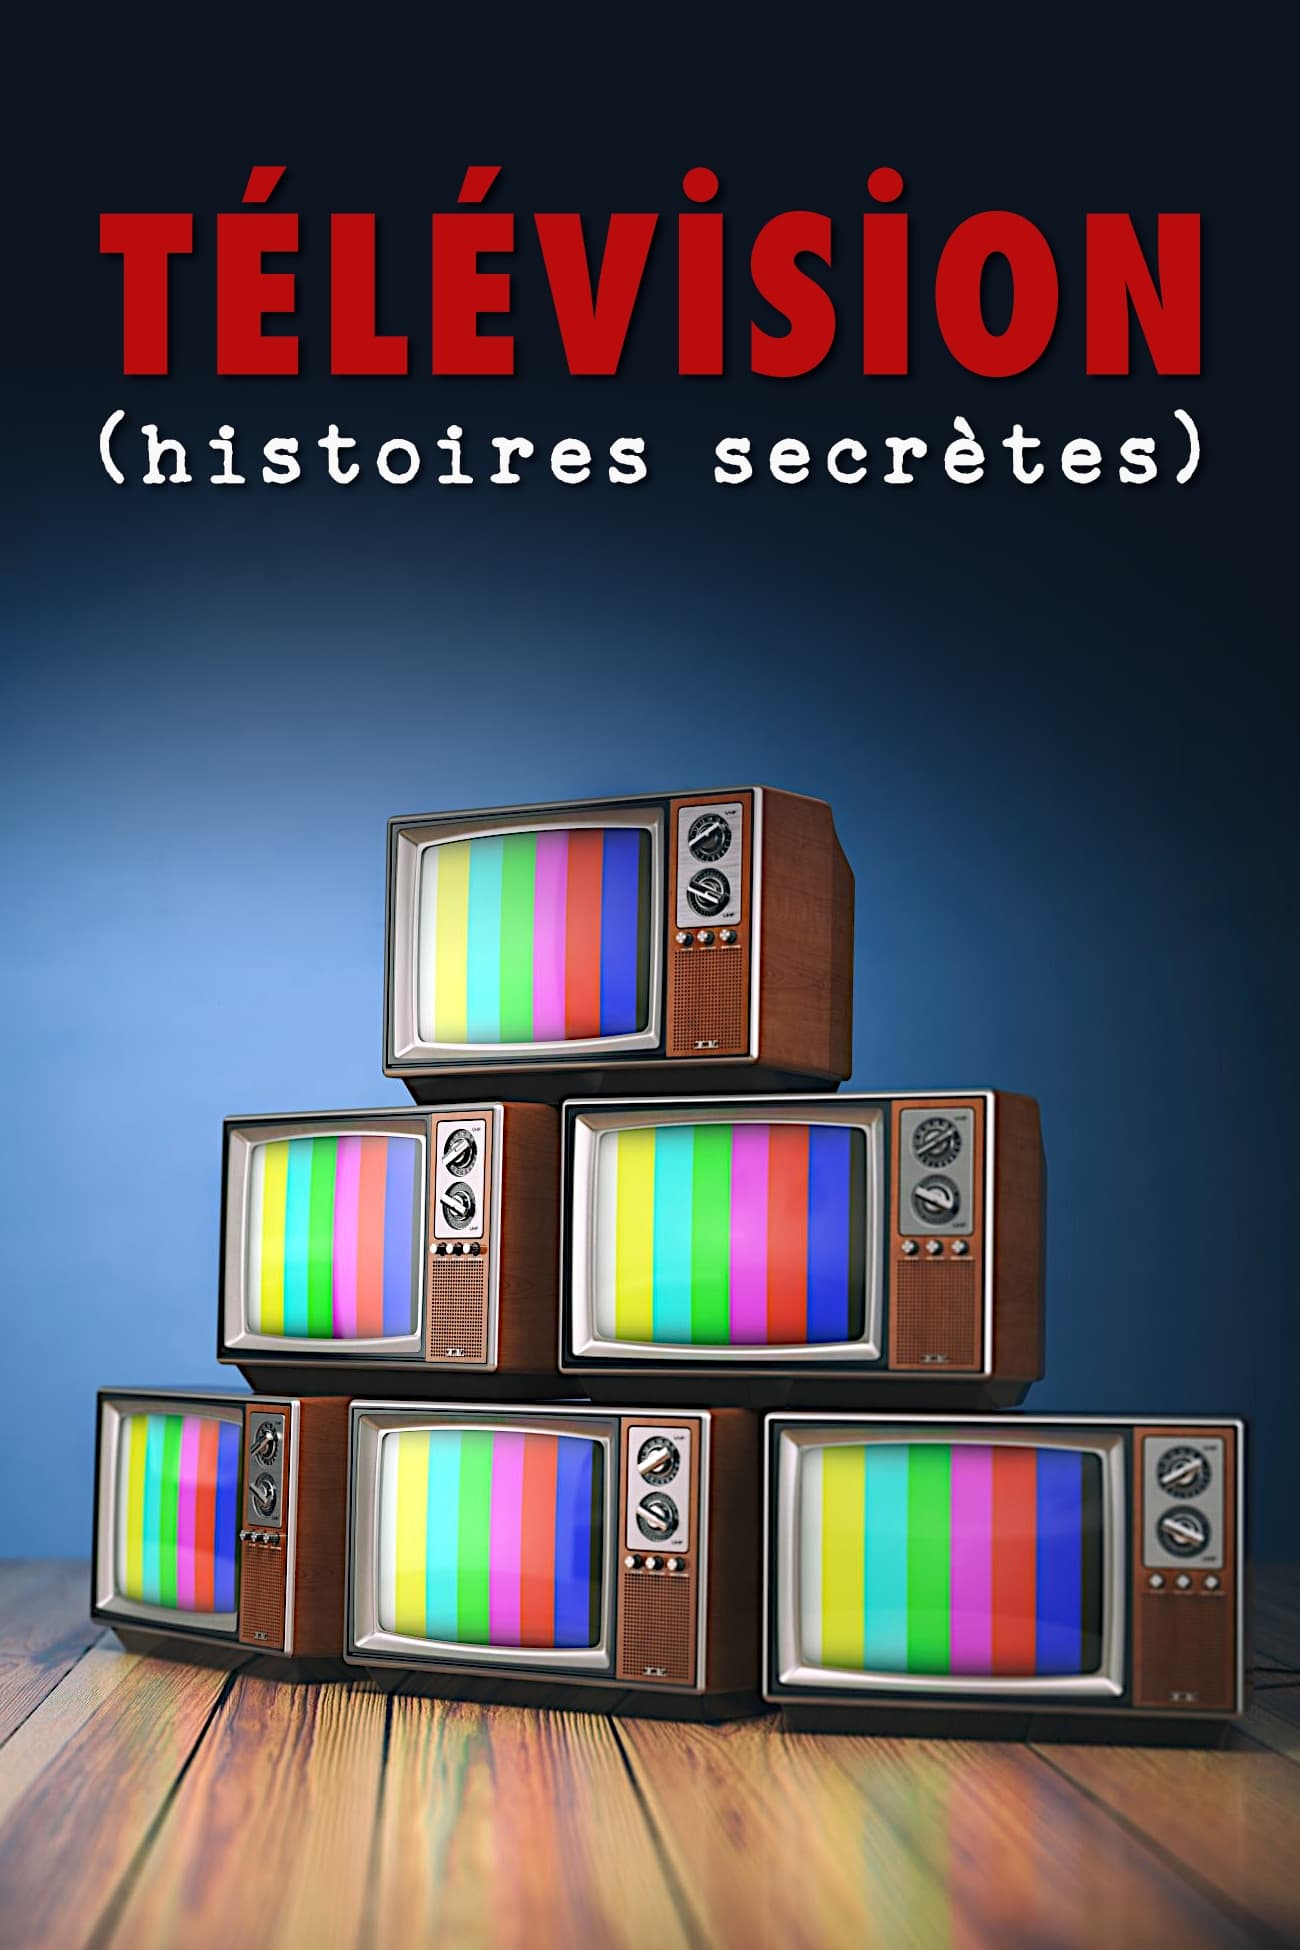 Télévision (histoires secrètes) TV Shows About Television History